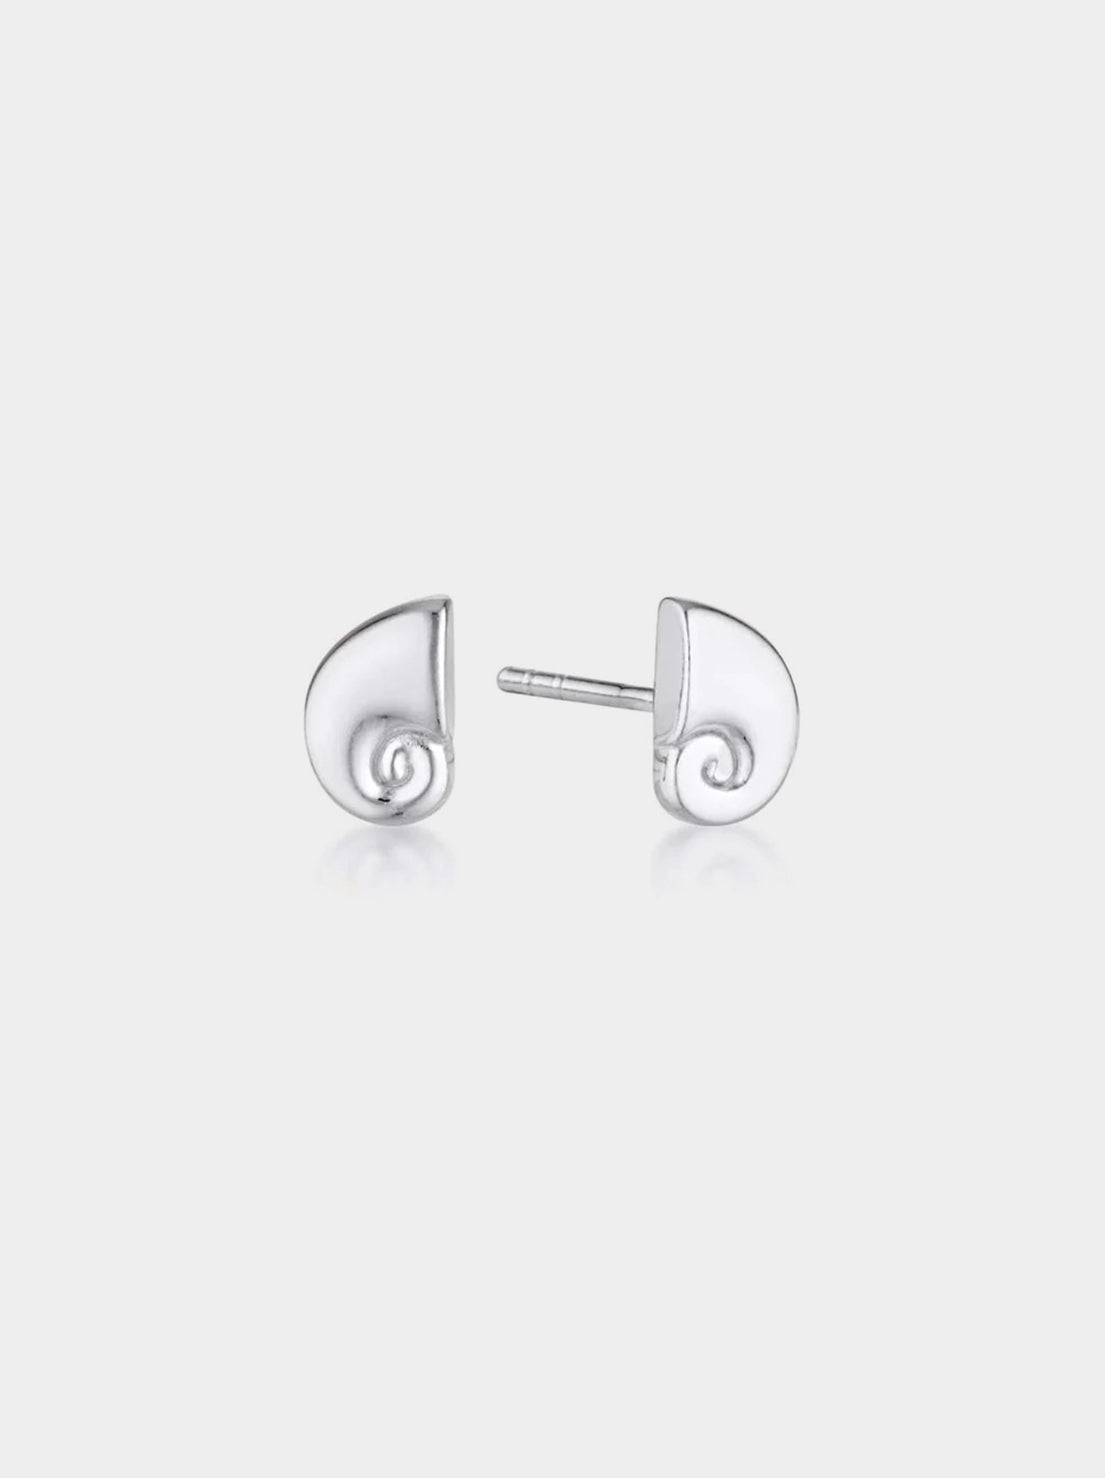 Linda Tahija - Nautilus Stud Earrings - Sterling Silver